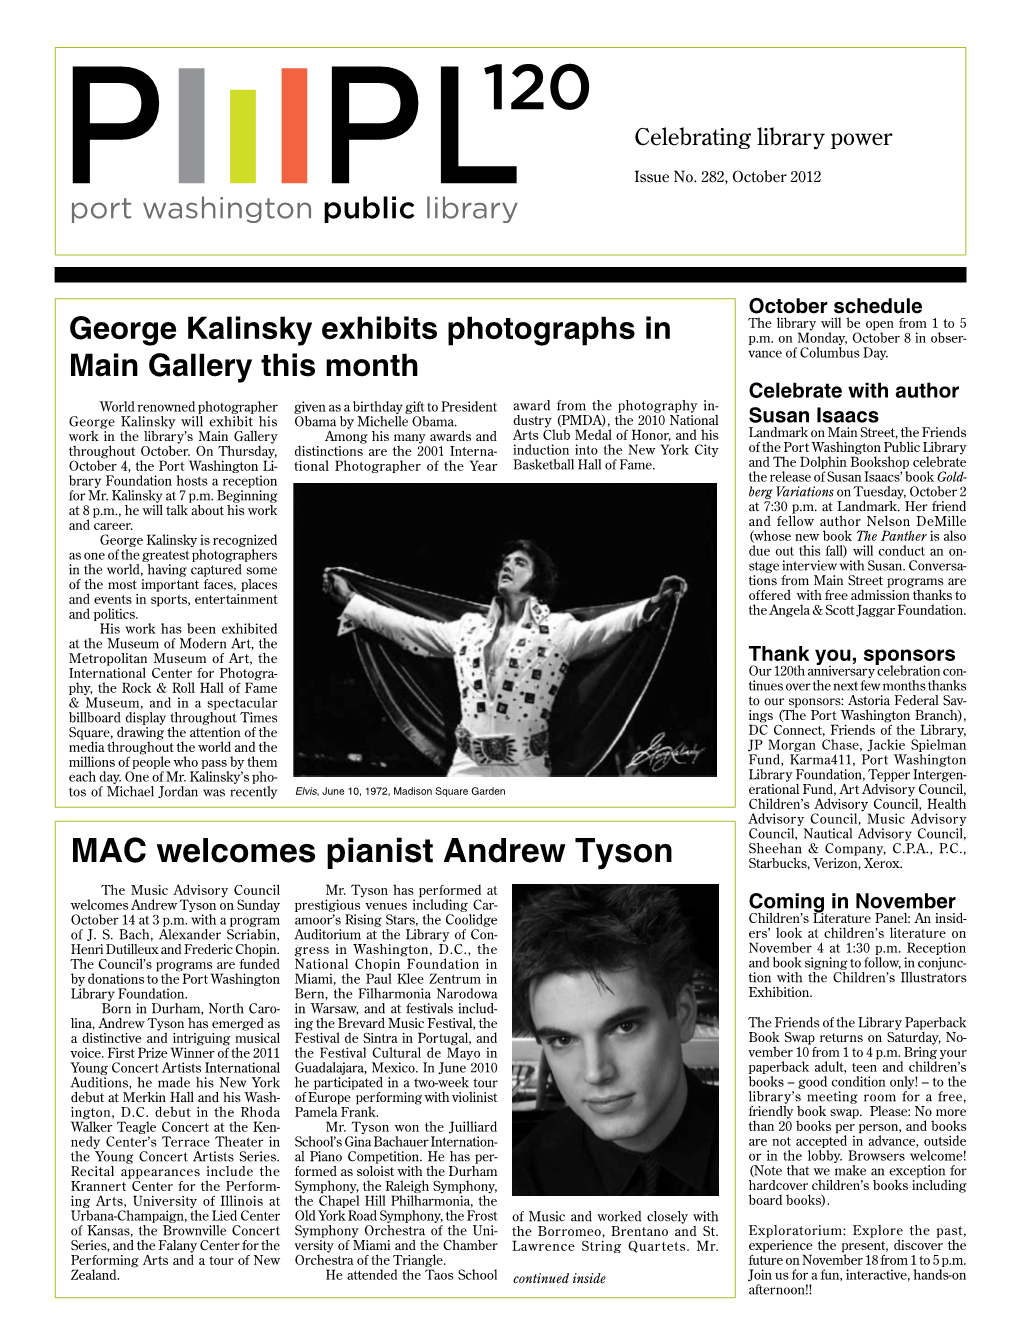 MAC Welcomes Pianist Andrew Tyson Starbucks, Verizon, Xerox